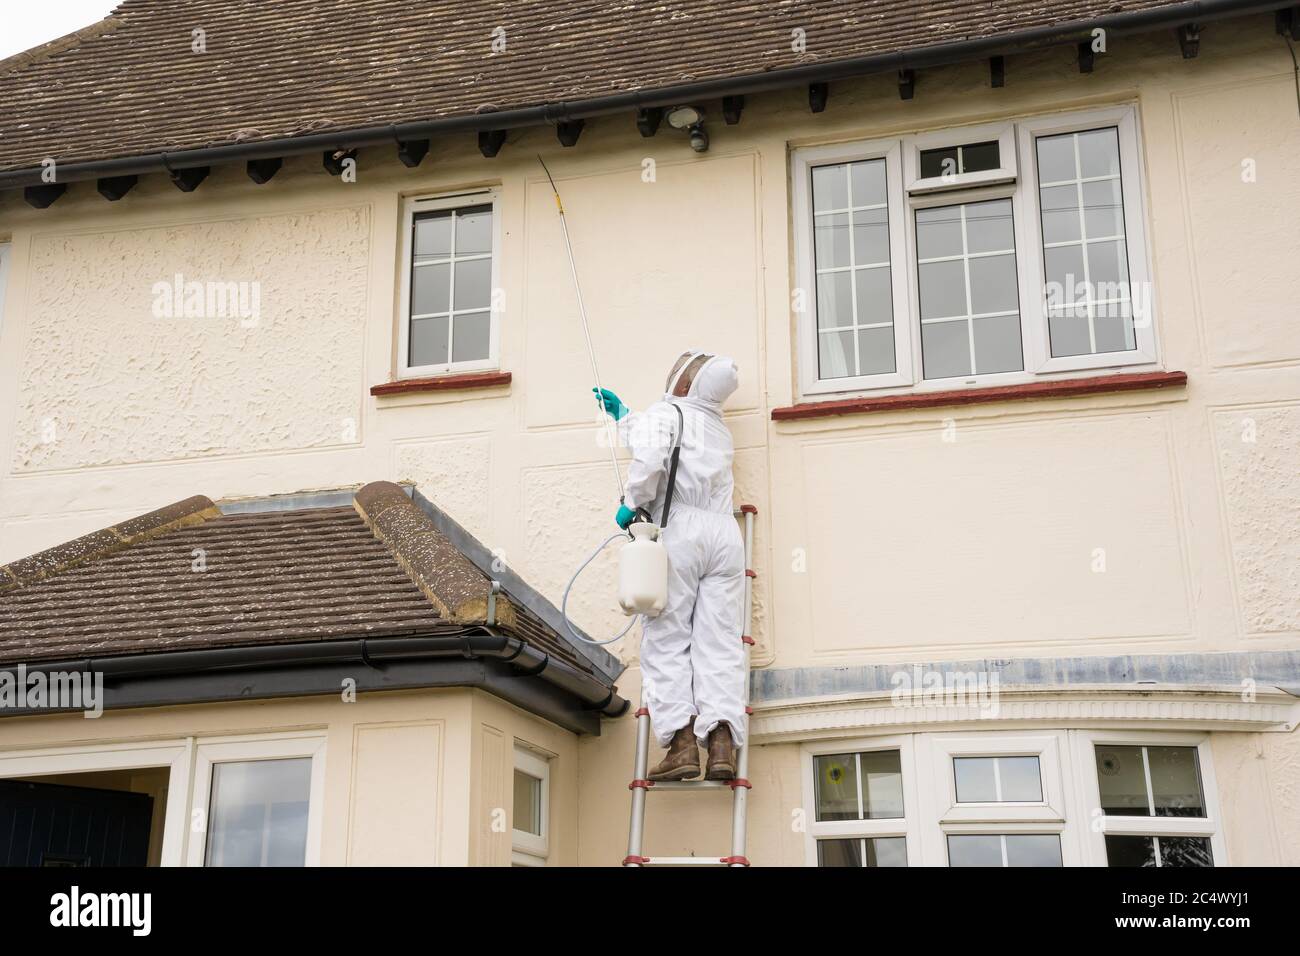 Contrôleur antiparasitaire non identifiable dans des vêtements de protection sur une échelle pulvérisant le traitement de tueur de guêpe sur les avant--toits d'une maison. Hertfordshire, Angleterre Royaume-Uni Banque D'Images